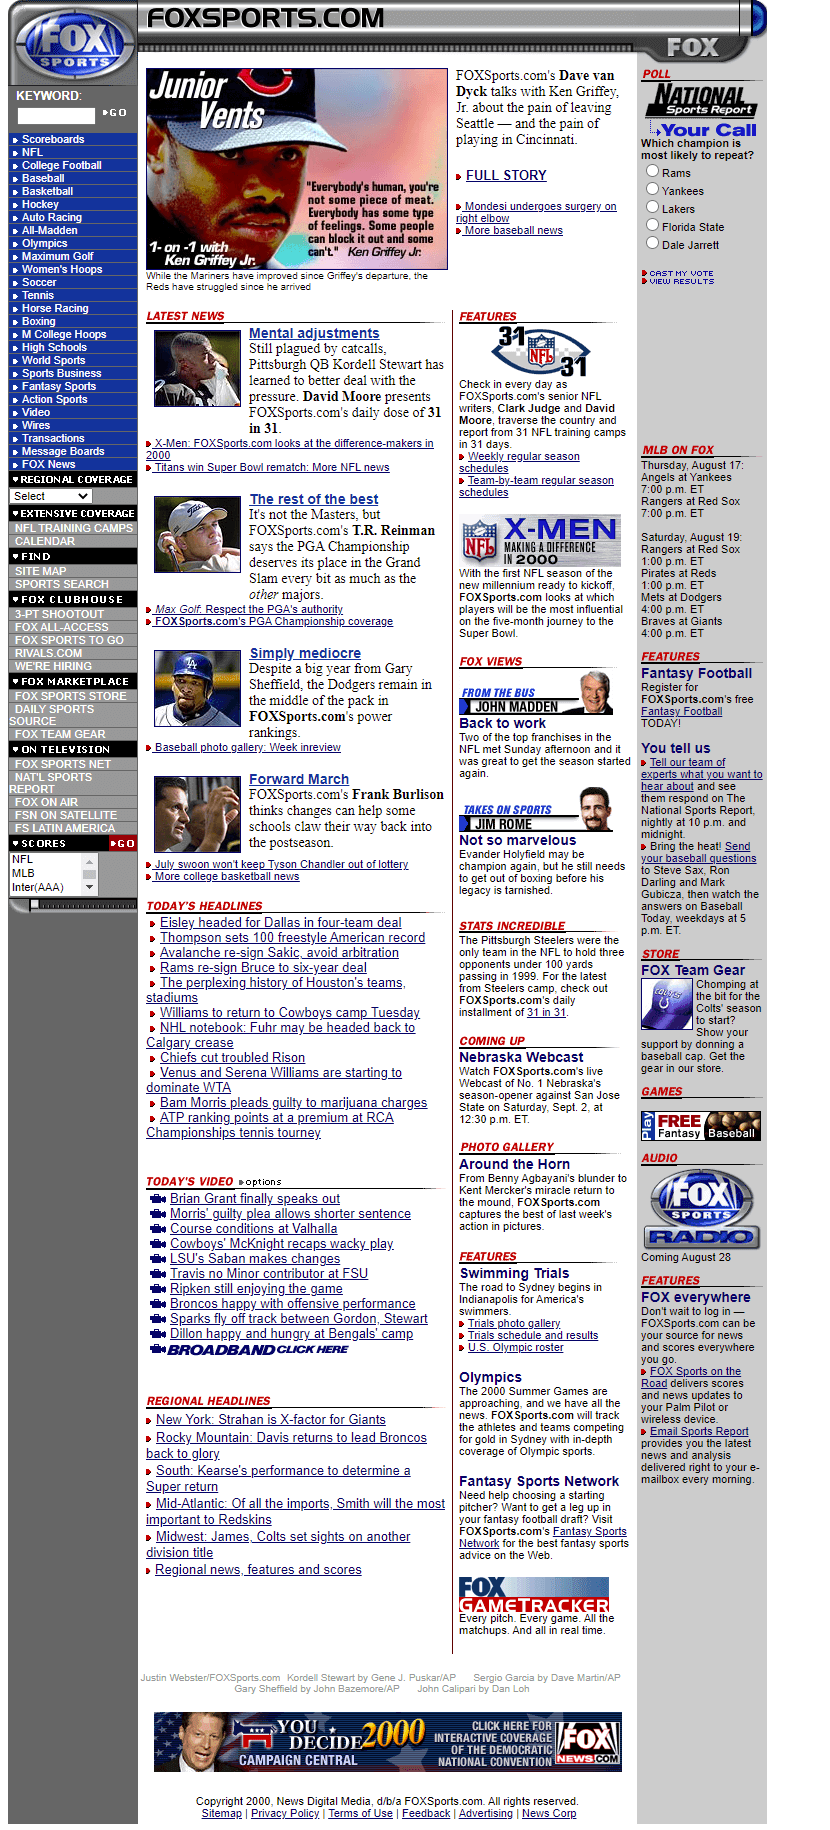 FOX Sports in 2000